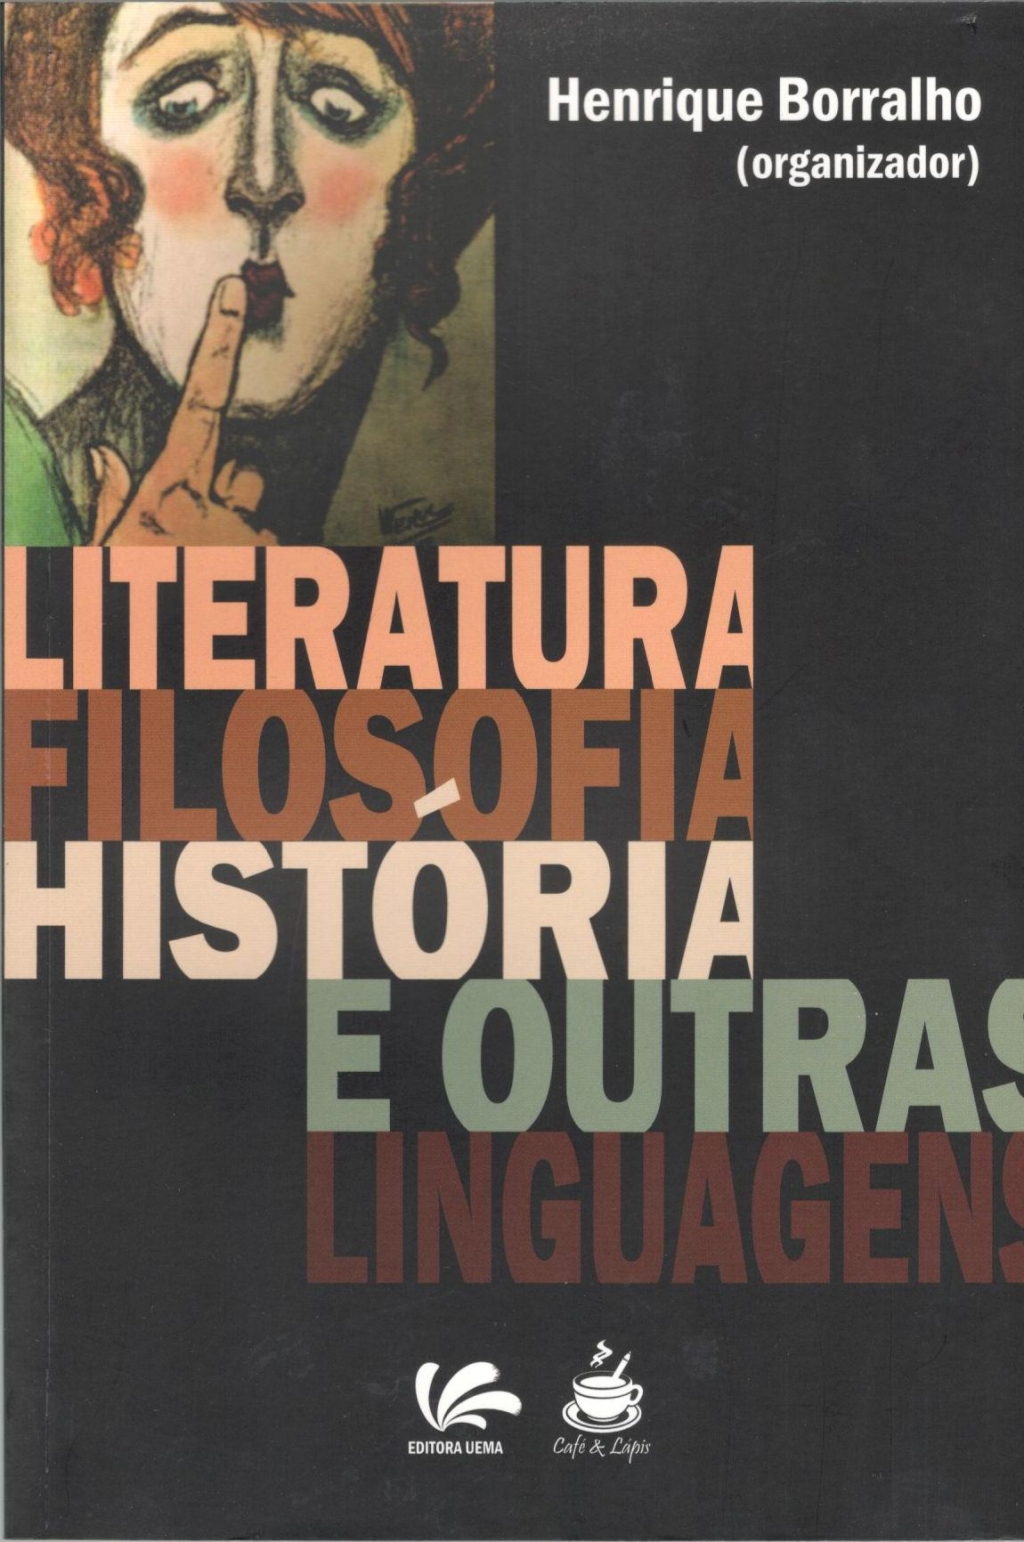 Literatura filosofia história e outras linguagens (Esgotado)